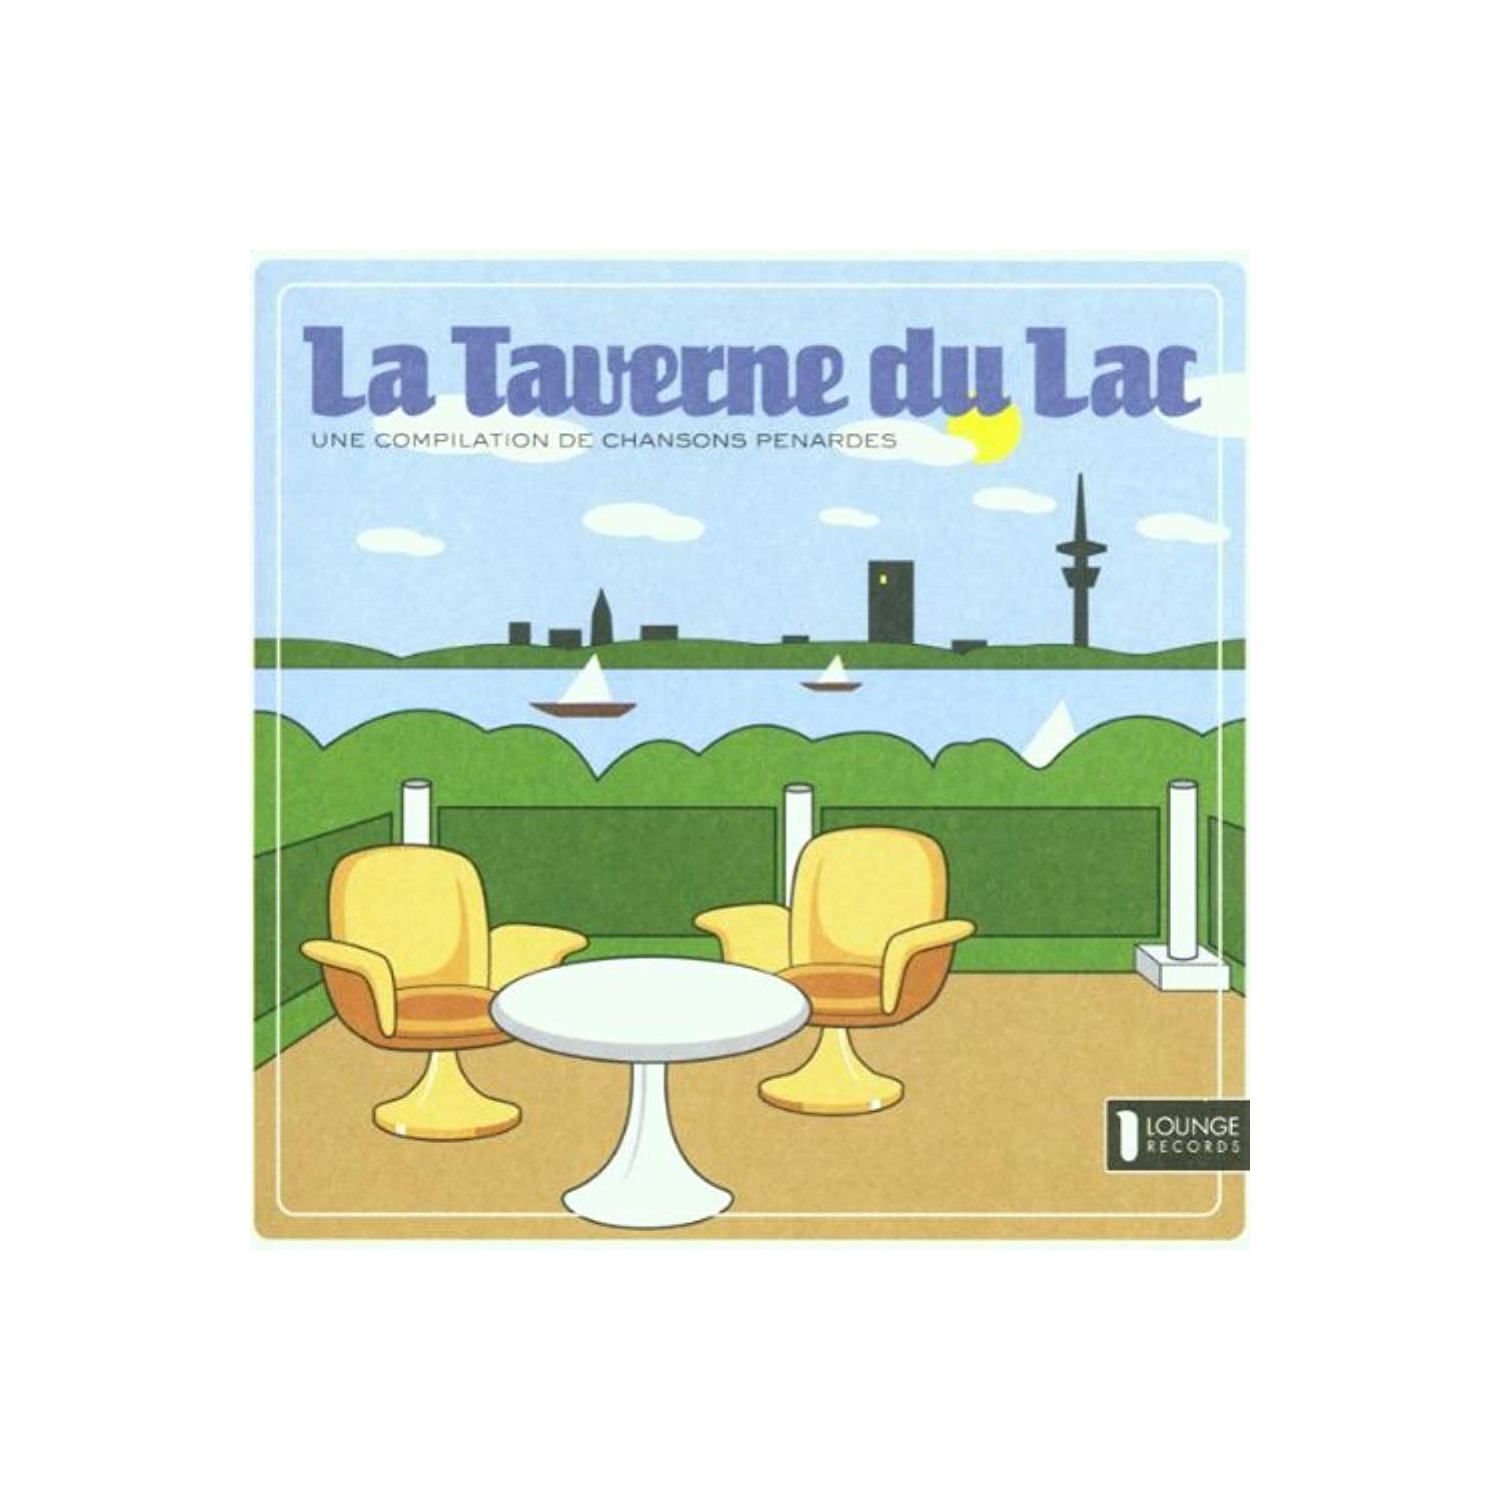 Un compilation de chansons penardes [Audio CD] La Taverne du Lac